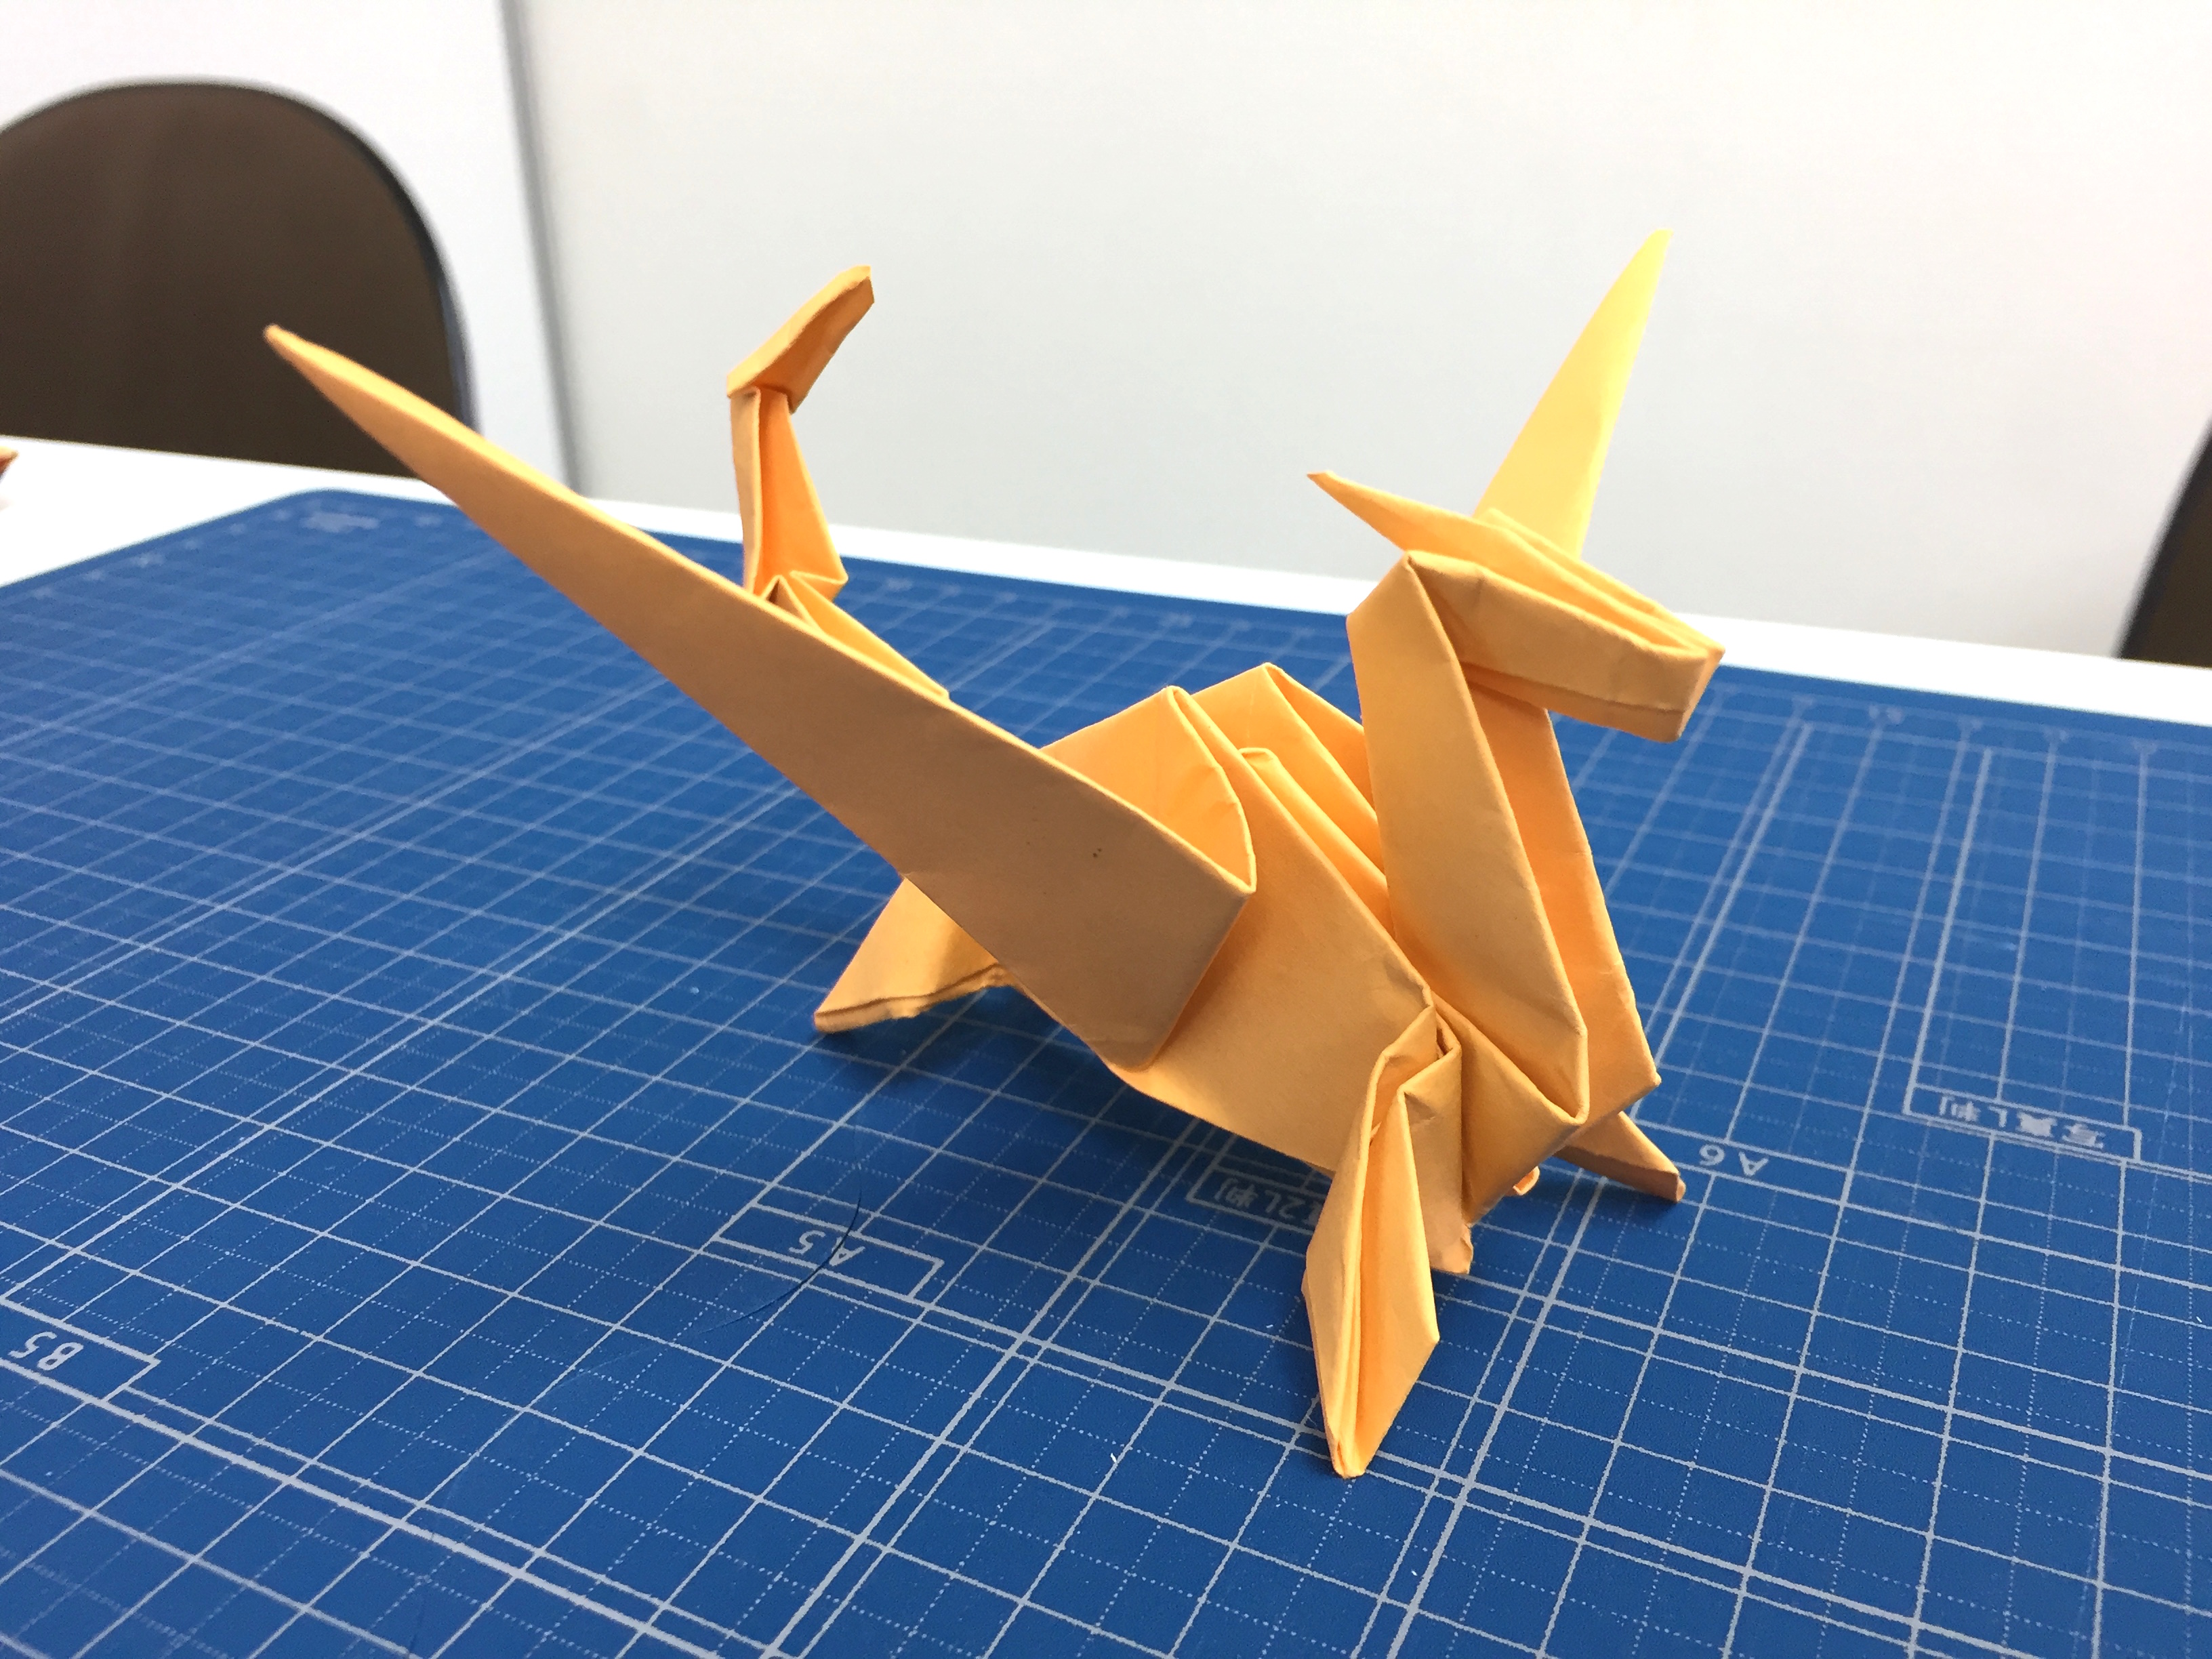 折り紙で作るドラゴン カッコよかったので折ってみました 神戸の印刷 出版と販促 前川企画印刷公式ブログ 嵐のマエブロ